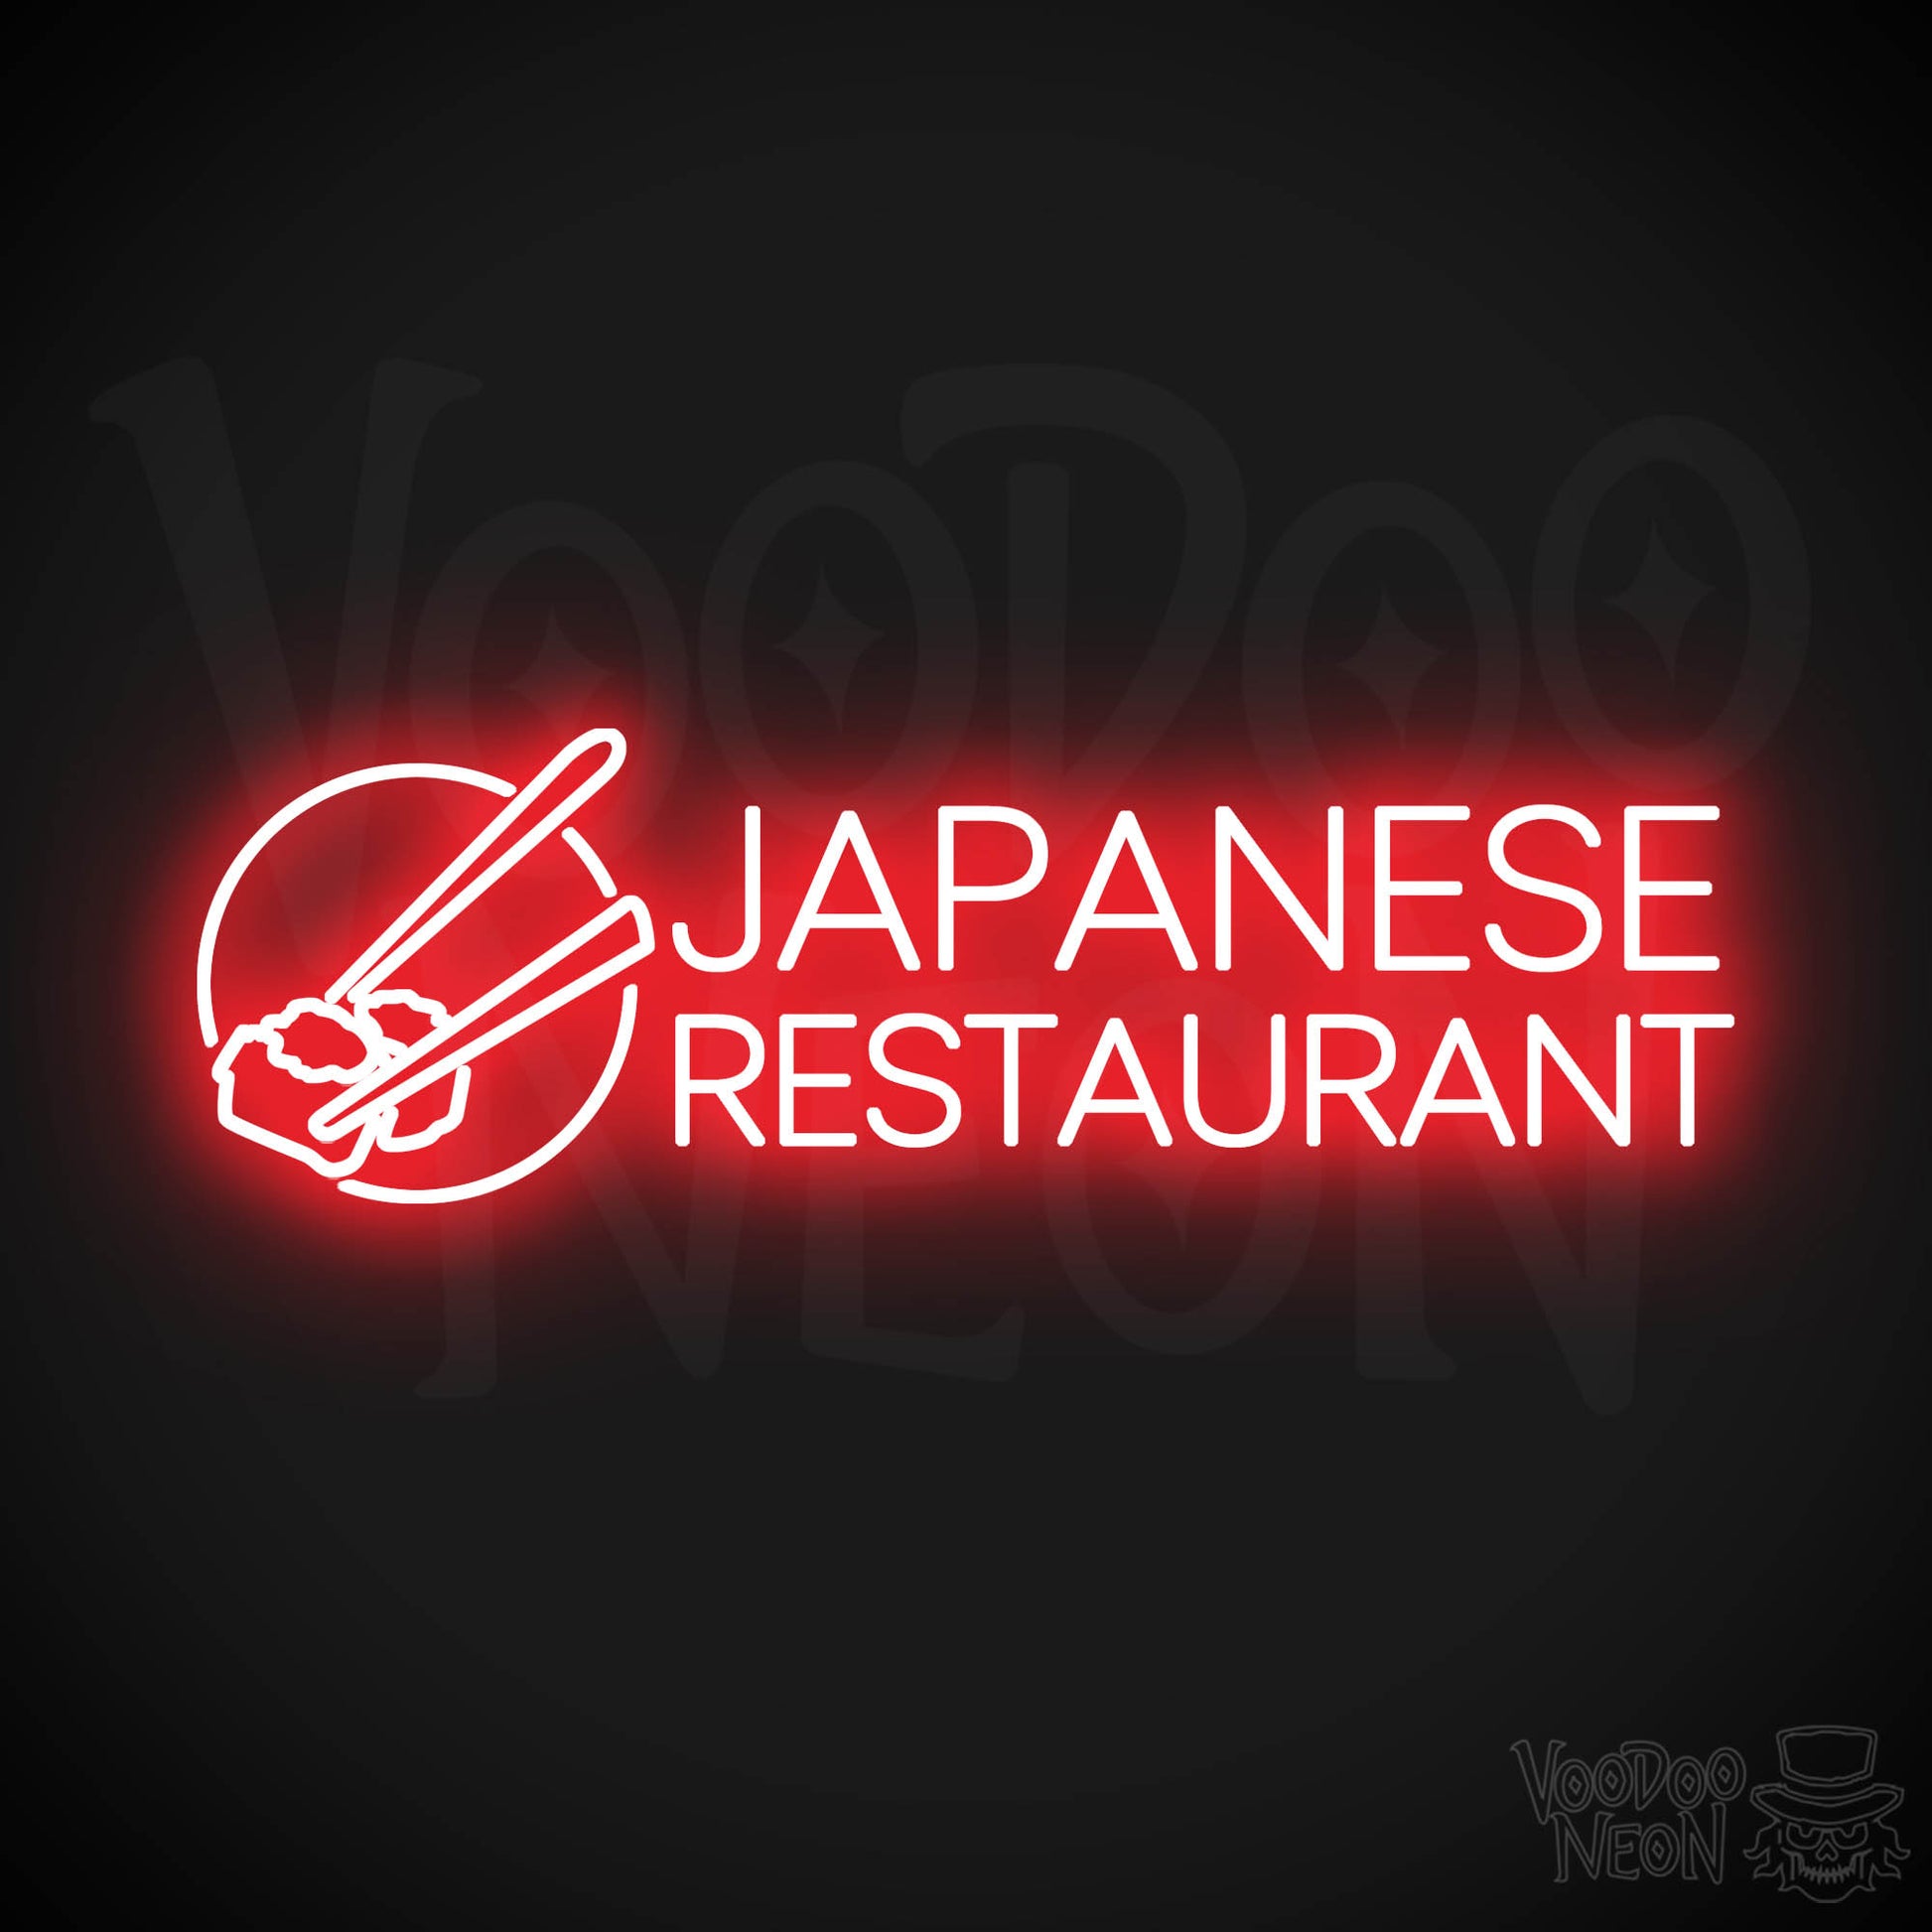 Japanese Restaurant LED Neon - Red